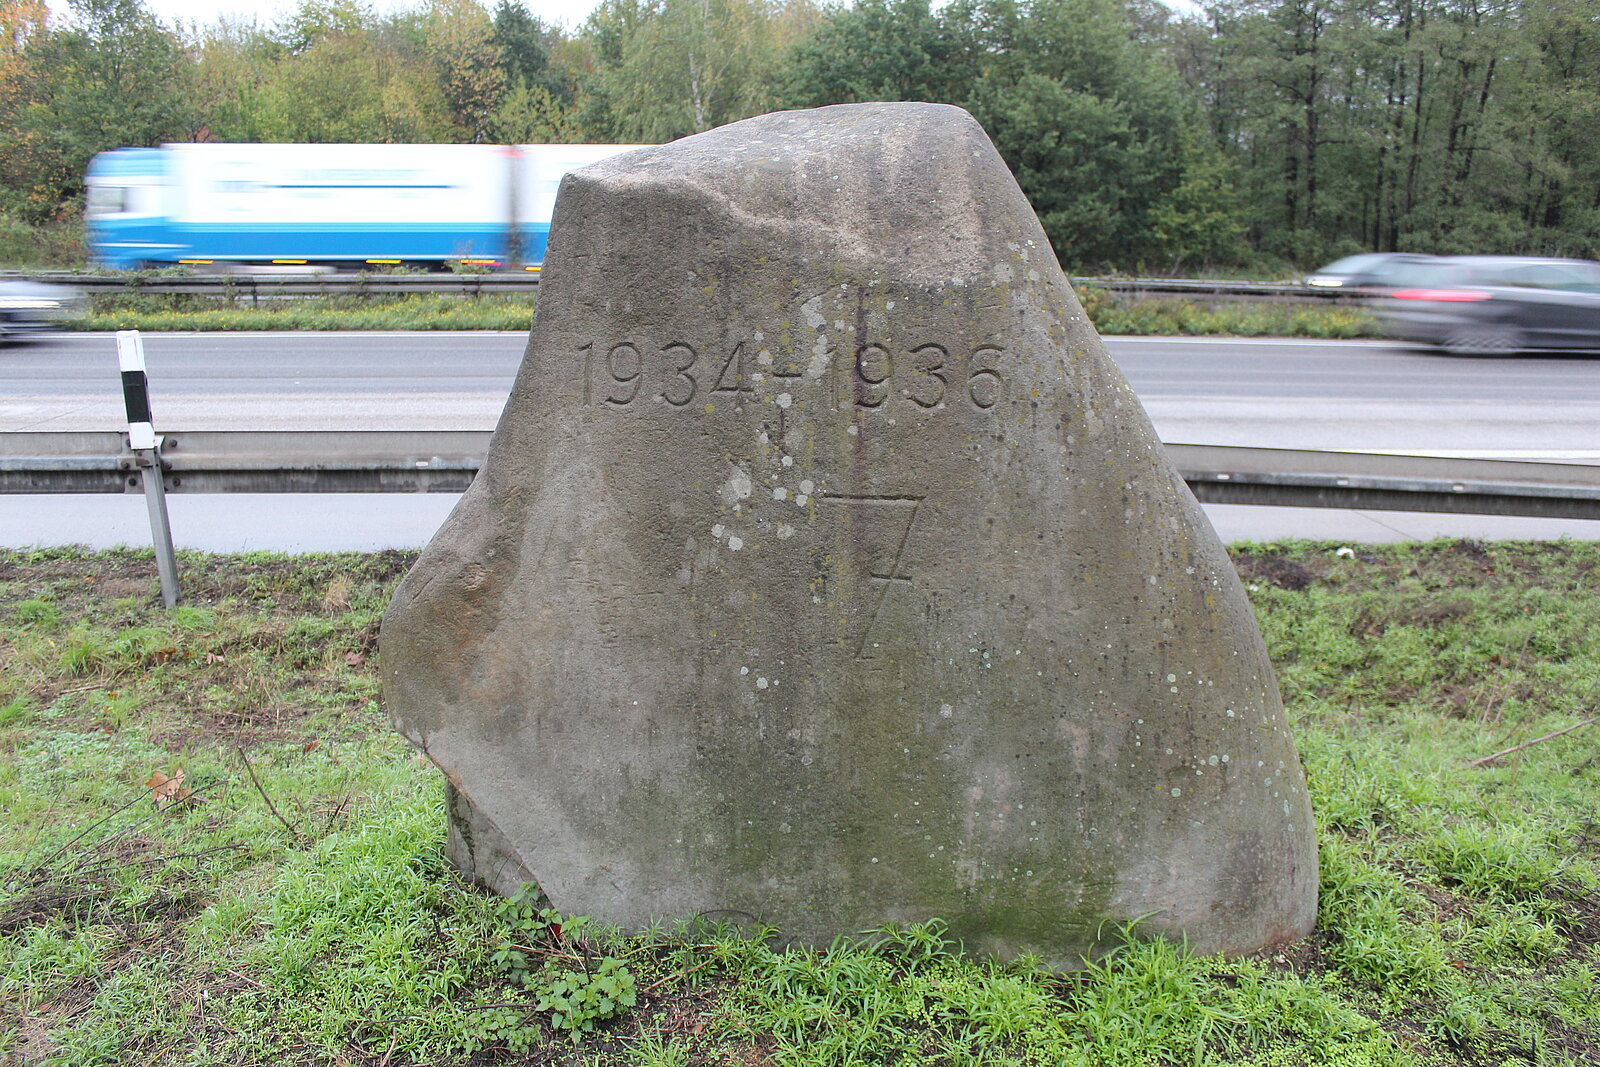 Gesteinsblock mit Inschrift "1934-1936 7." vor Autobahn.